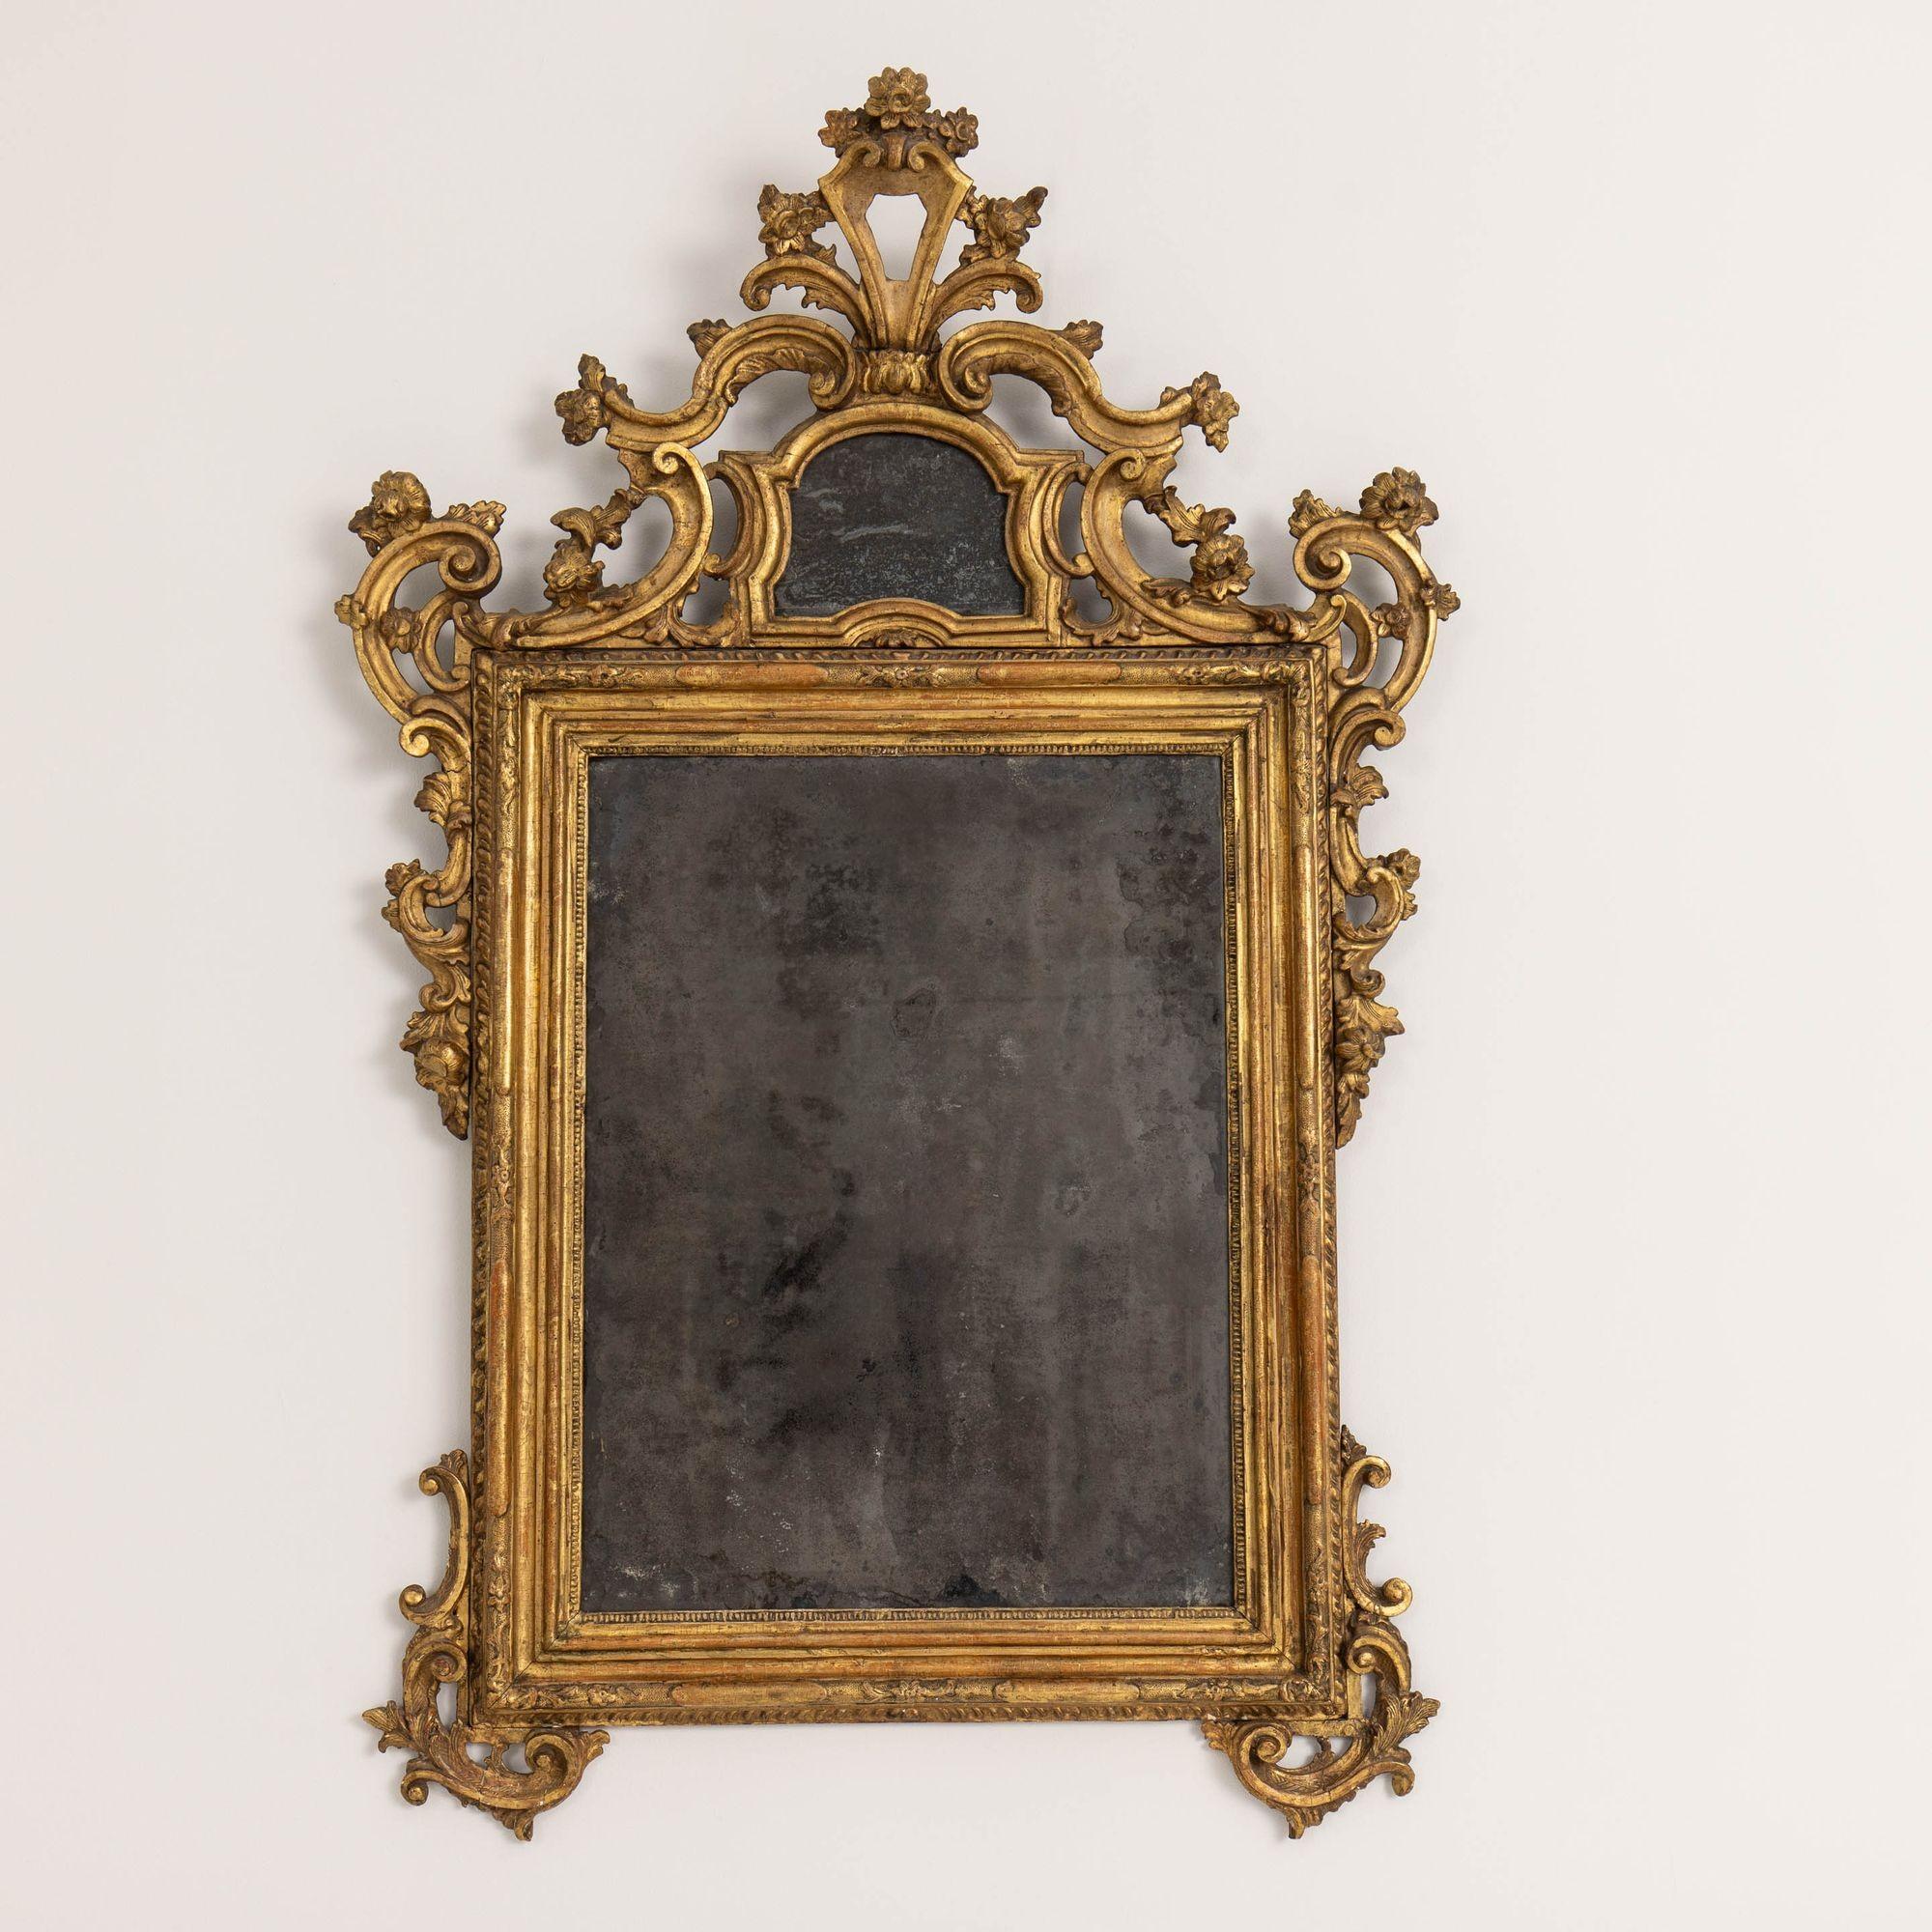 Exquis miroir vénitien du XVIIIe siècle de la période baroque, avec des plaques d'origine en bois doré et au mercure magnifiquement vieillies, vers 1740. Elle repose sur deux pieds à enroulement, avec des motifs de fleurs et de feuilles d'acanthe